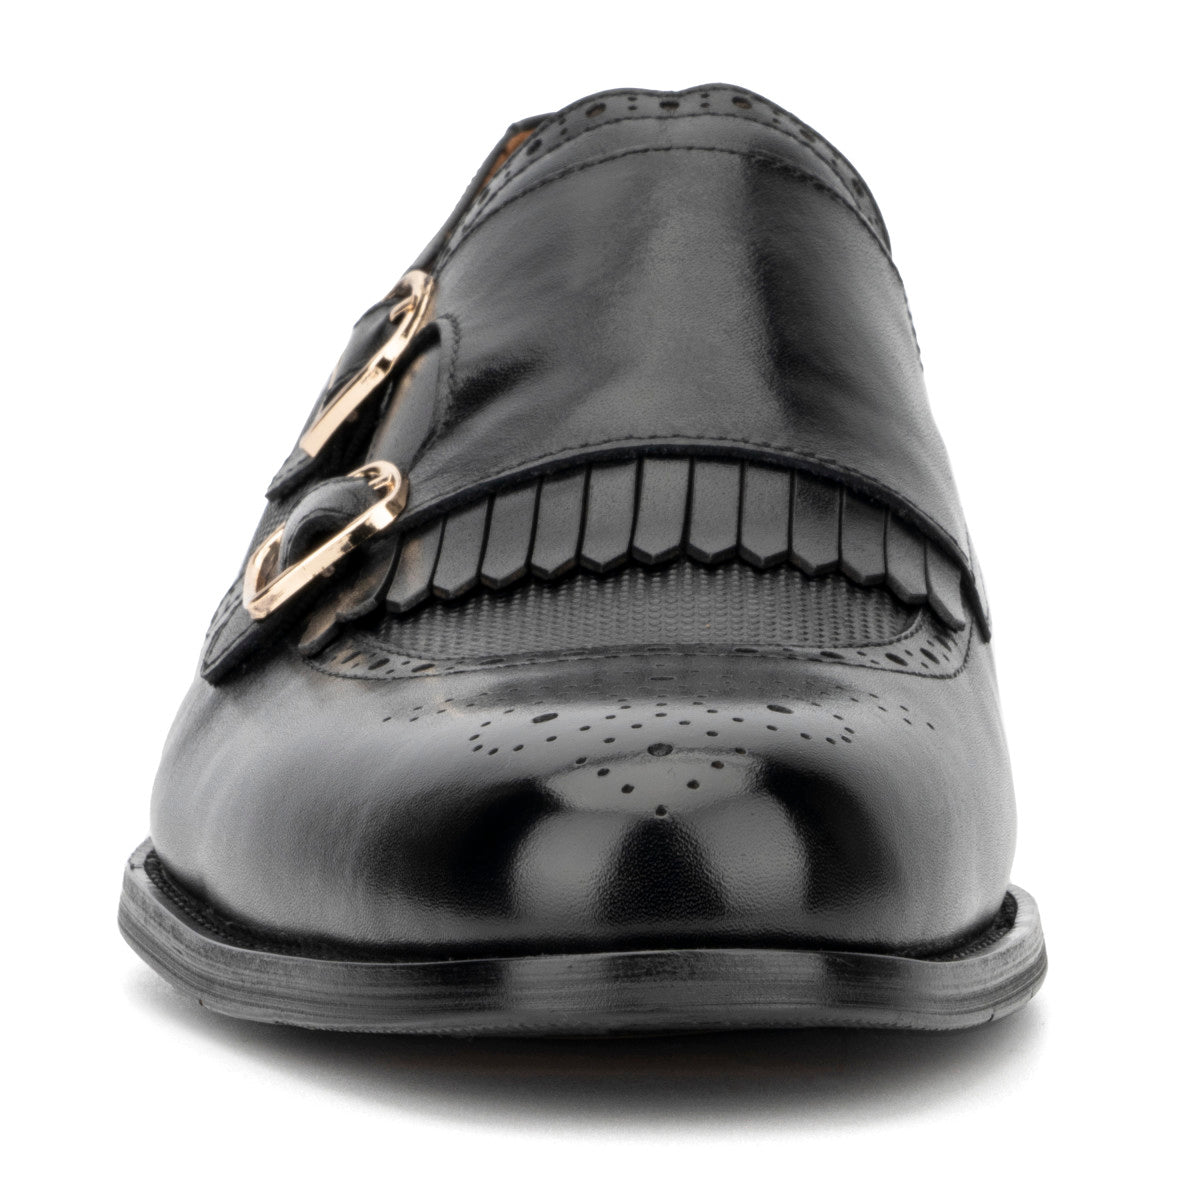 Bolton Men's Monk Shoe